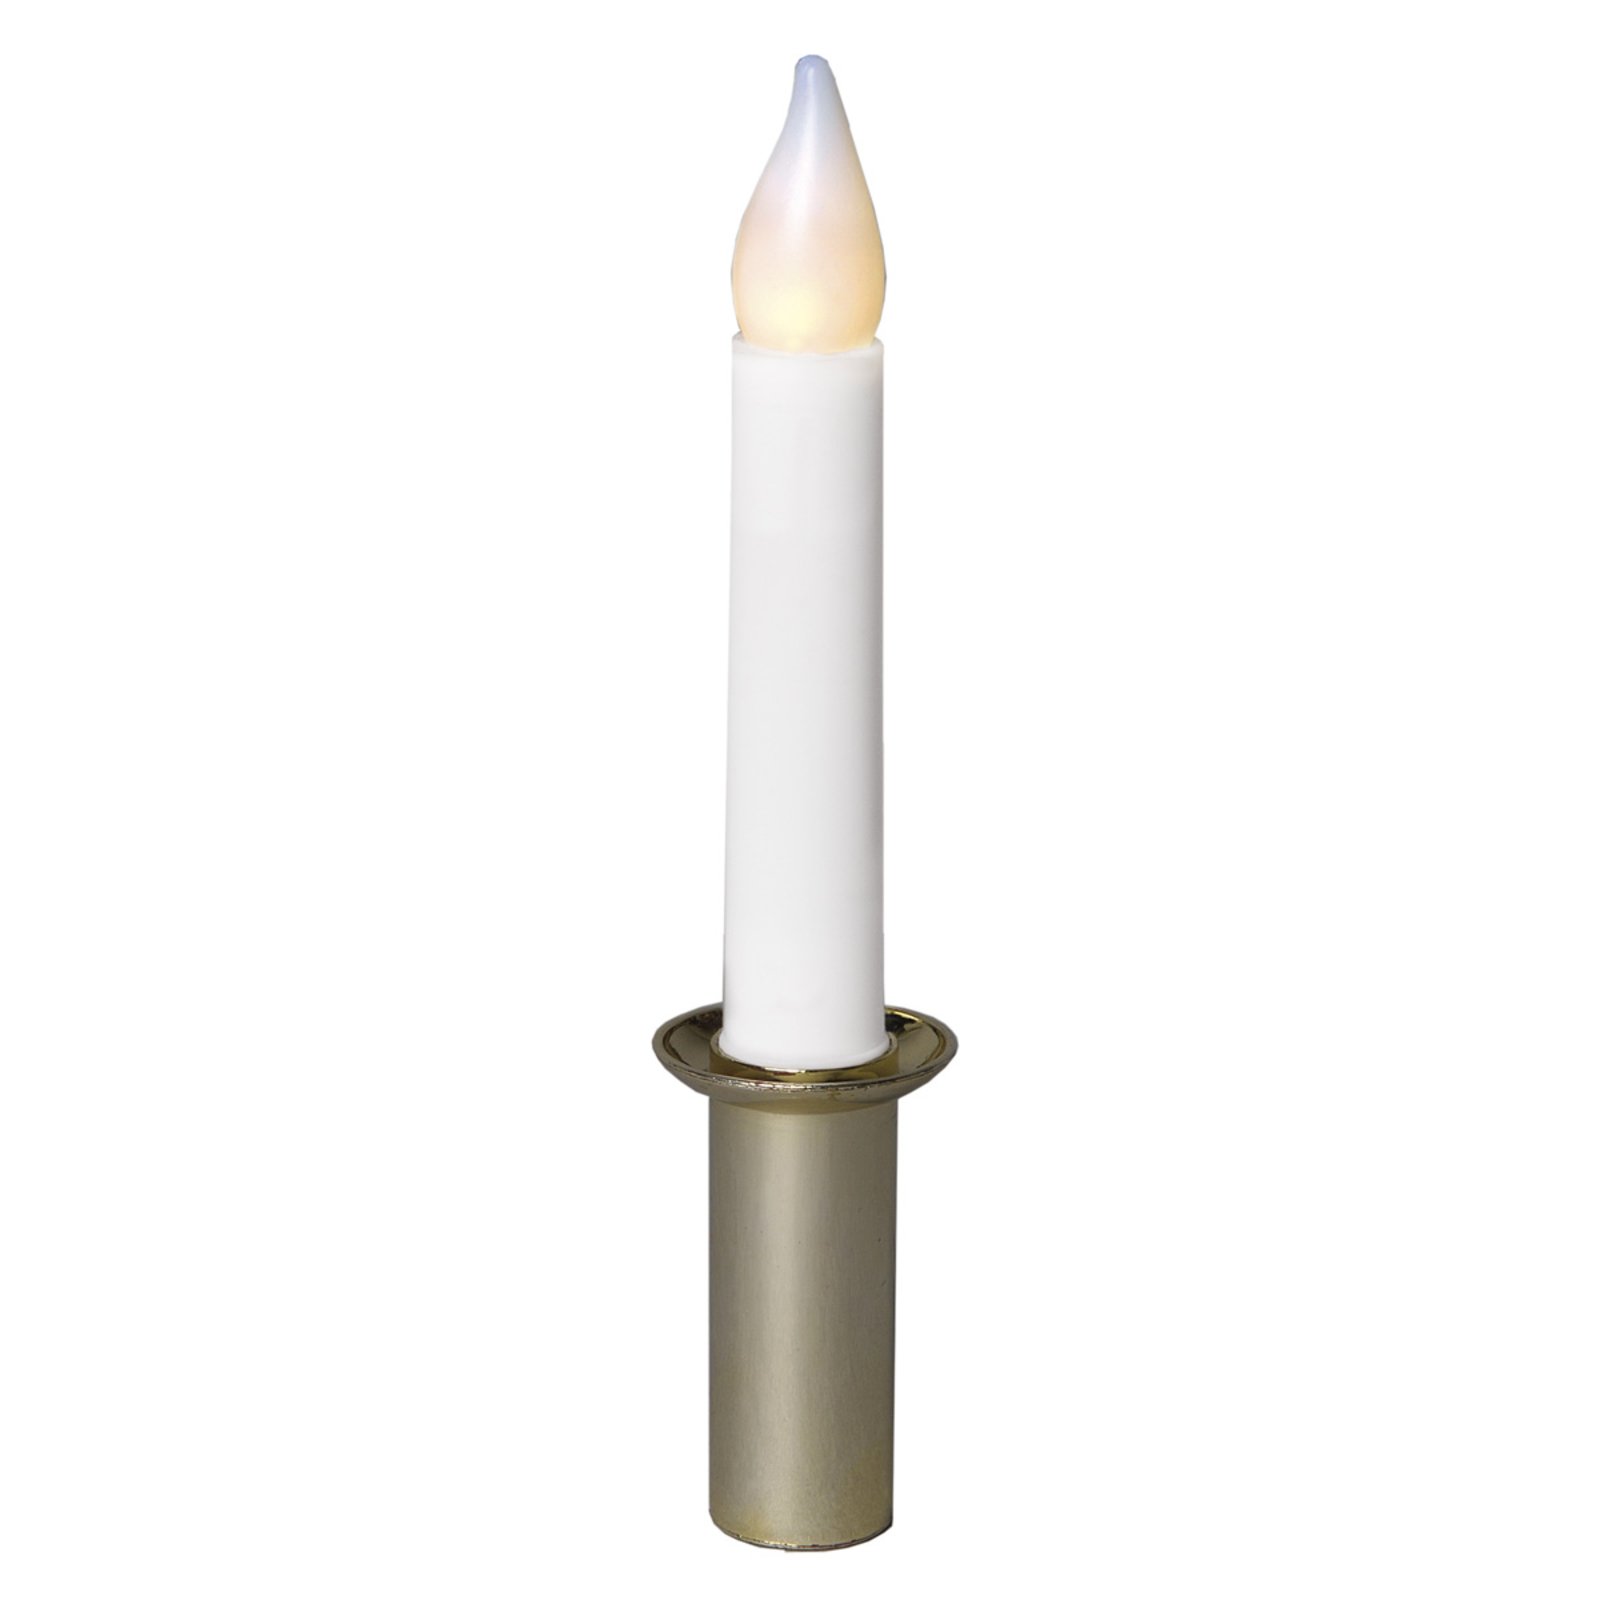 LED svíčka s držákem bílo-zlatá